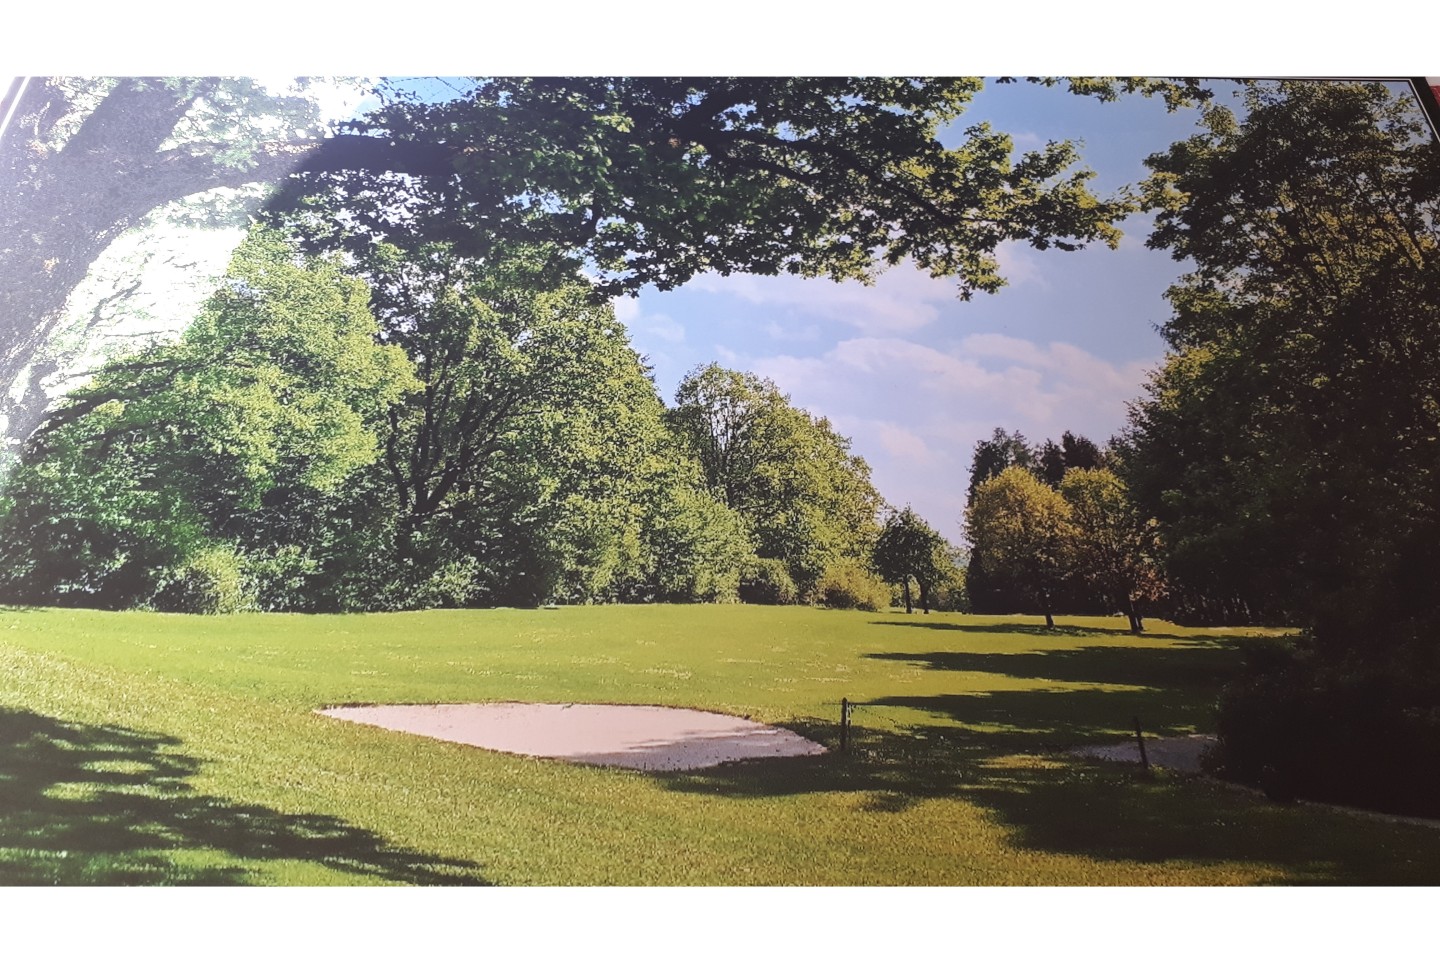 Bad Driburger Golfclub e.V.: Golf - Gesund und Fit auf dem Rasen